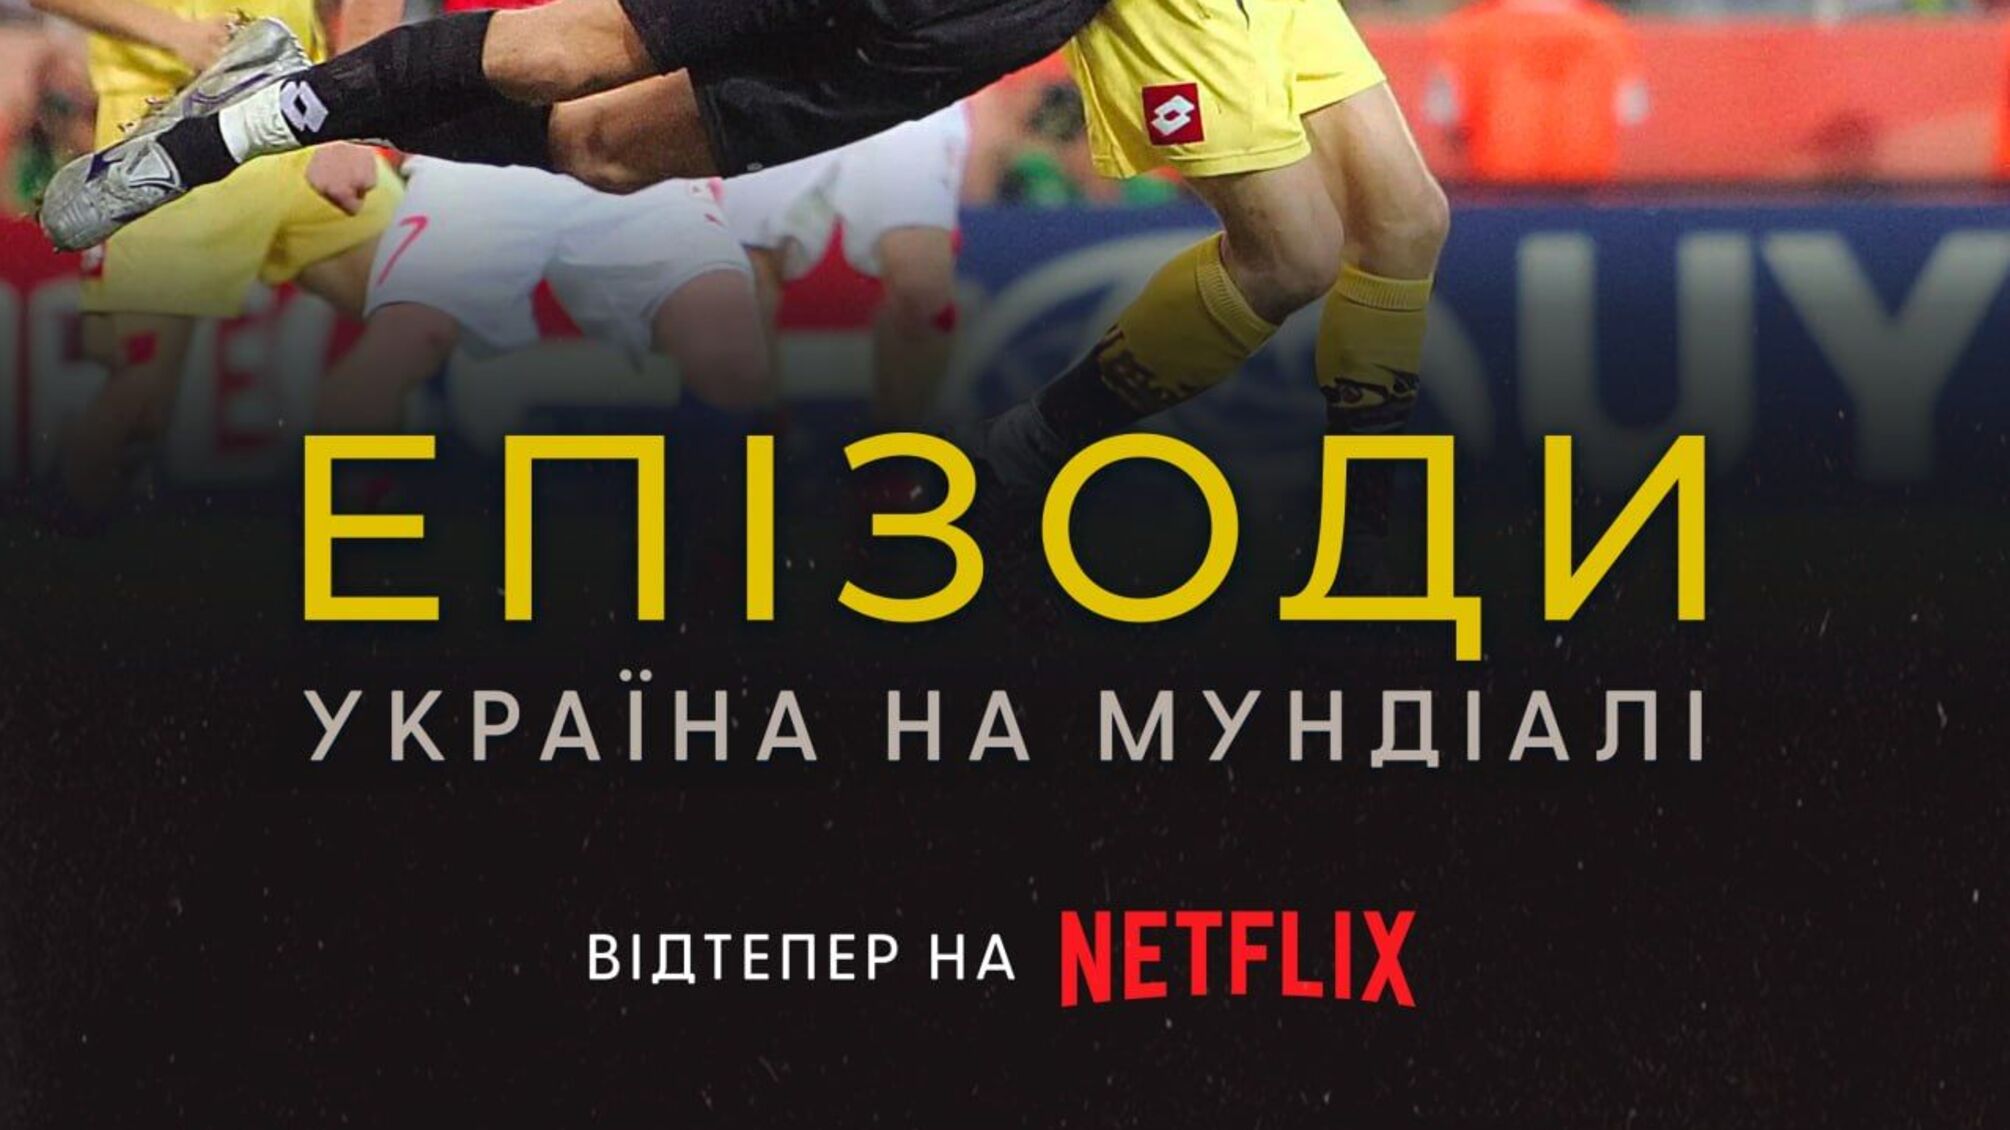 На Netflix вышел документальный фильм 'ЭПИЗОДЫ: Украина на Мундиале'.